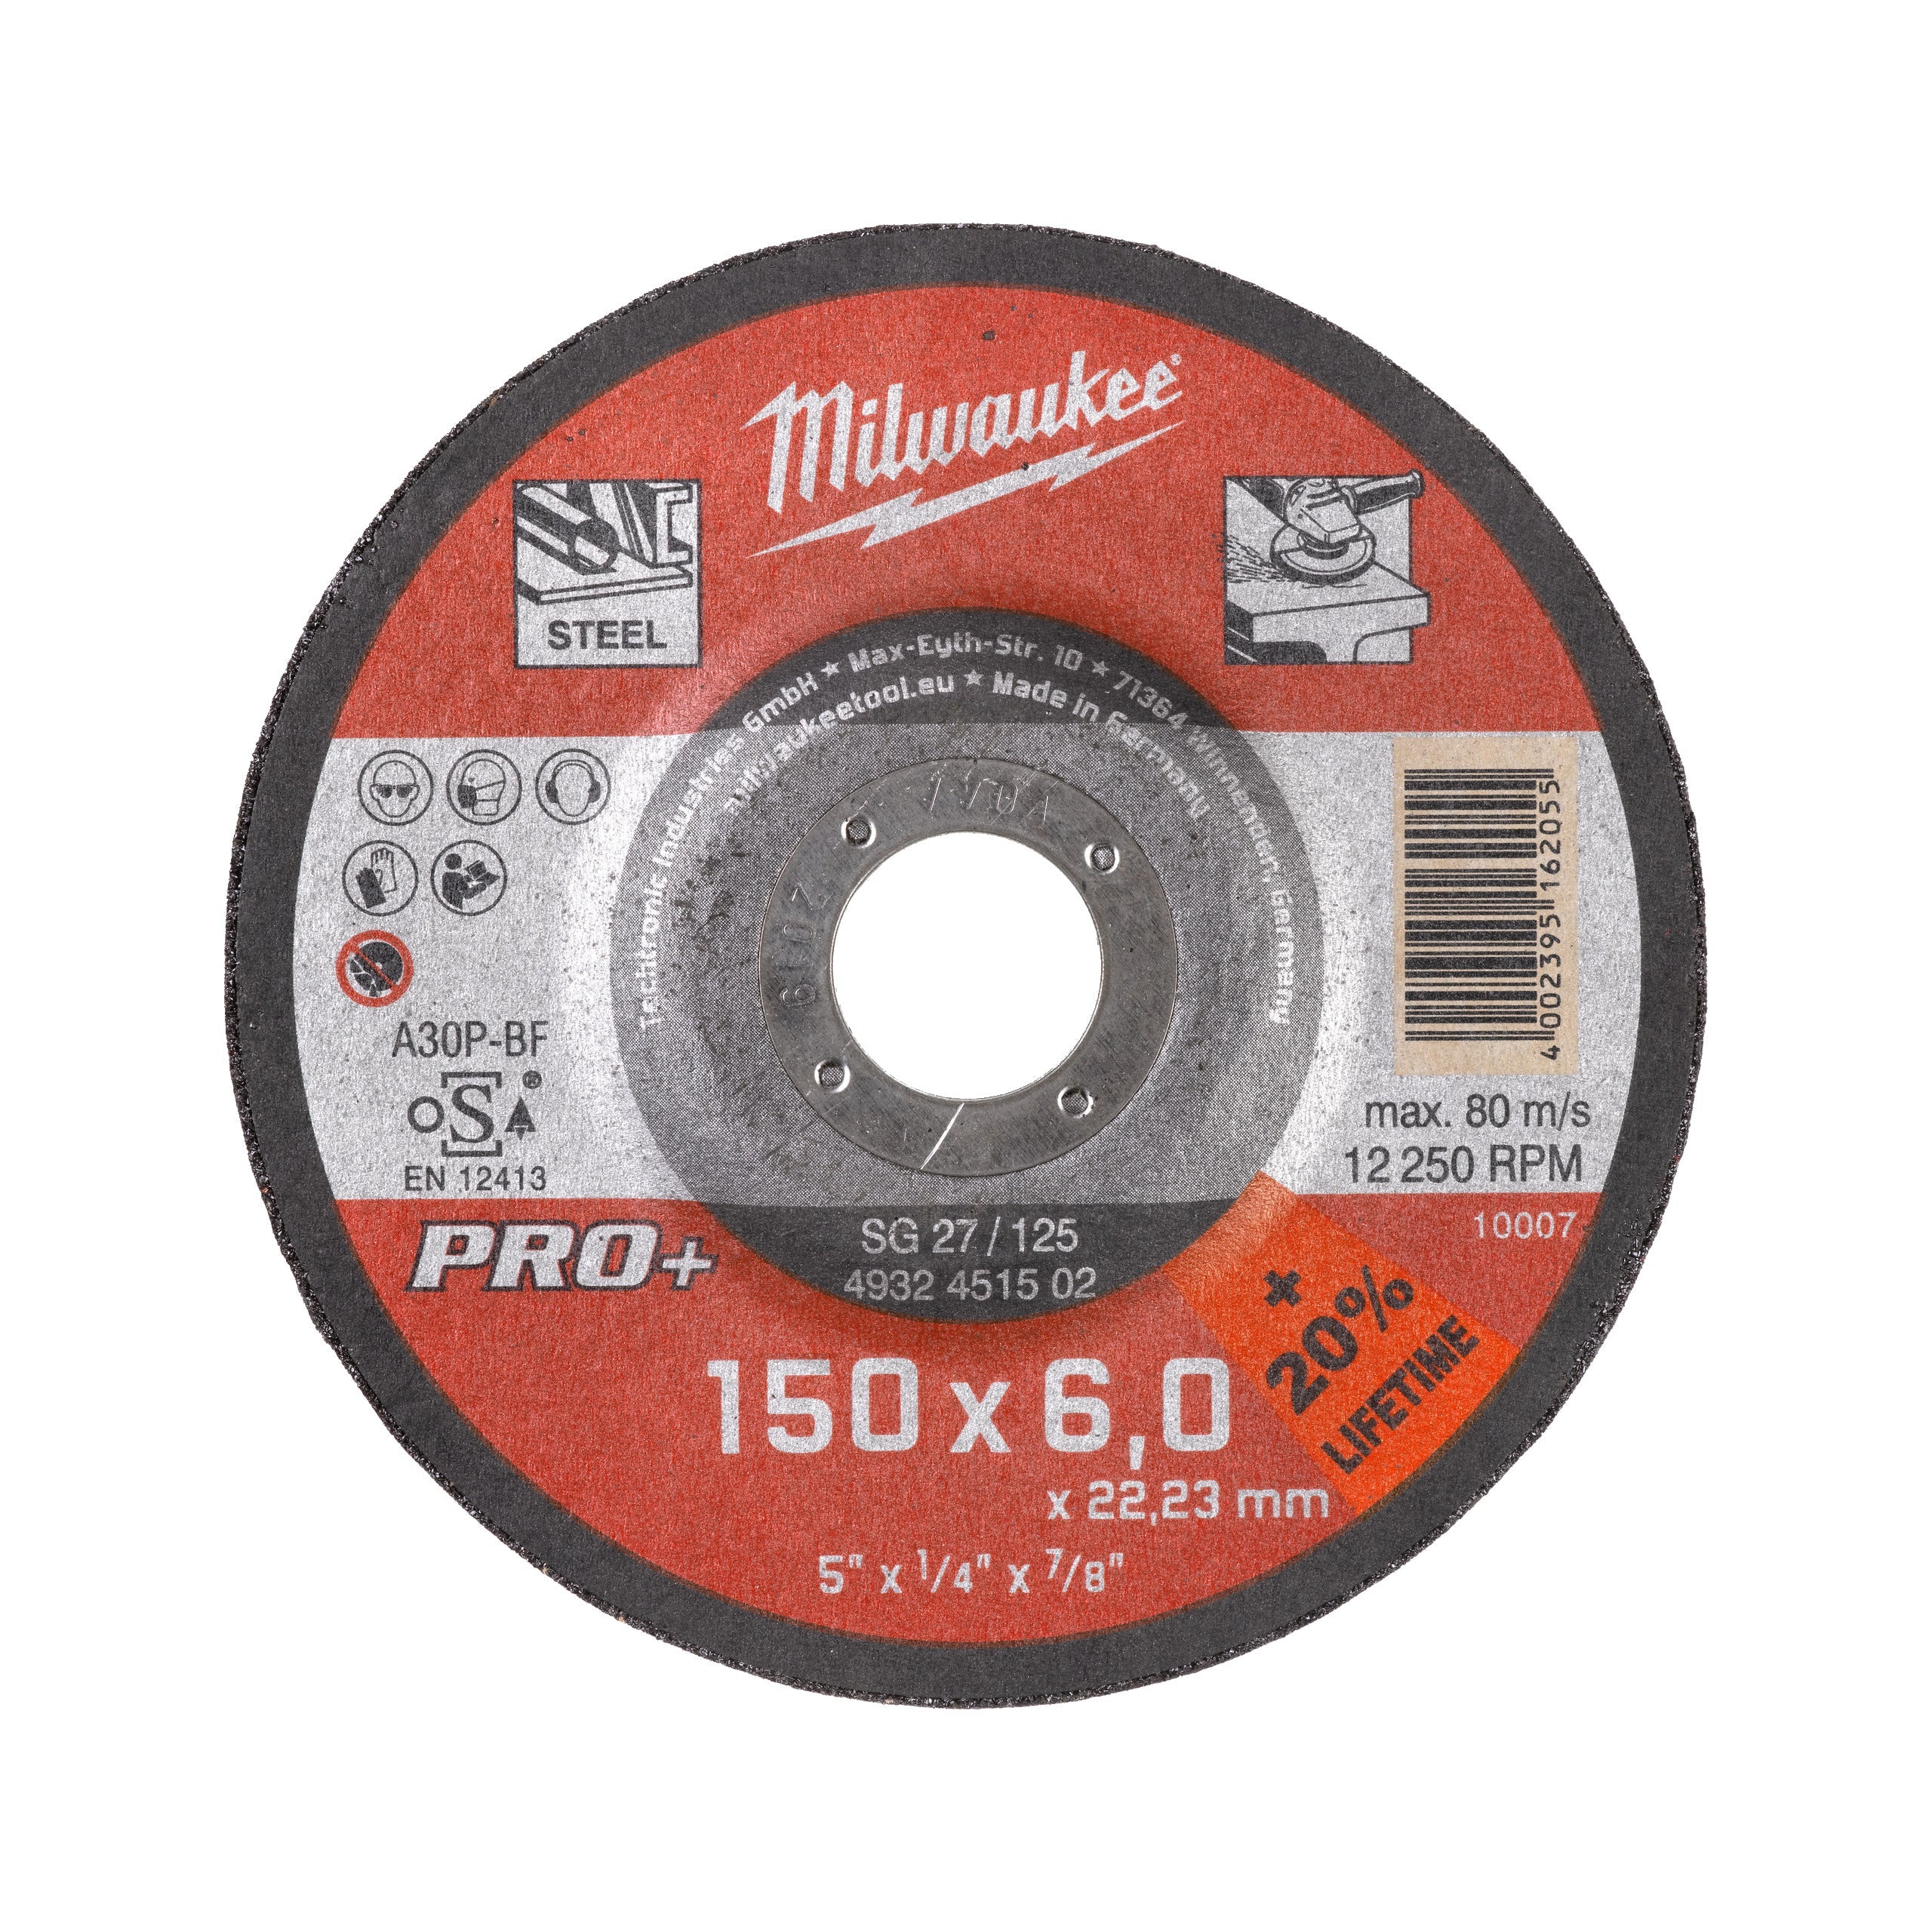 Discuri PRO+ pentru polizat metal, Milwaukee cod 4932471387